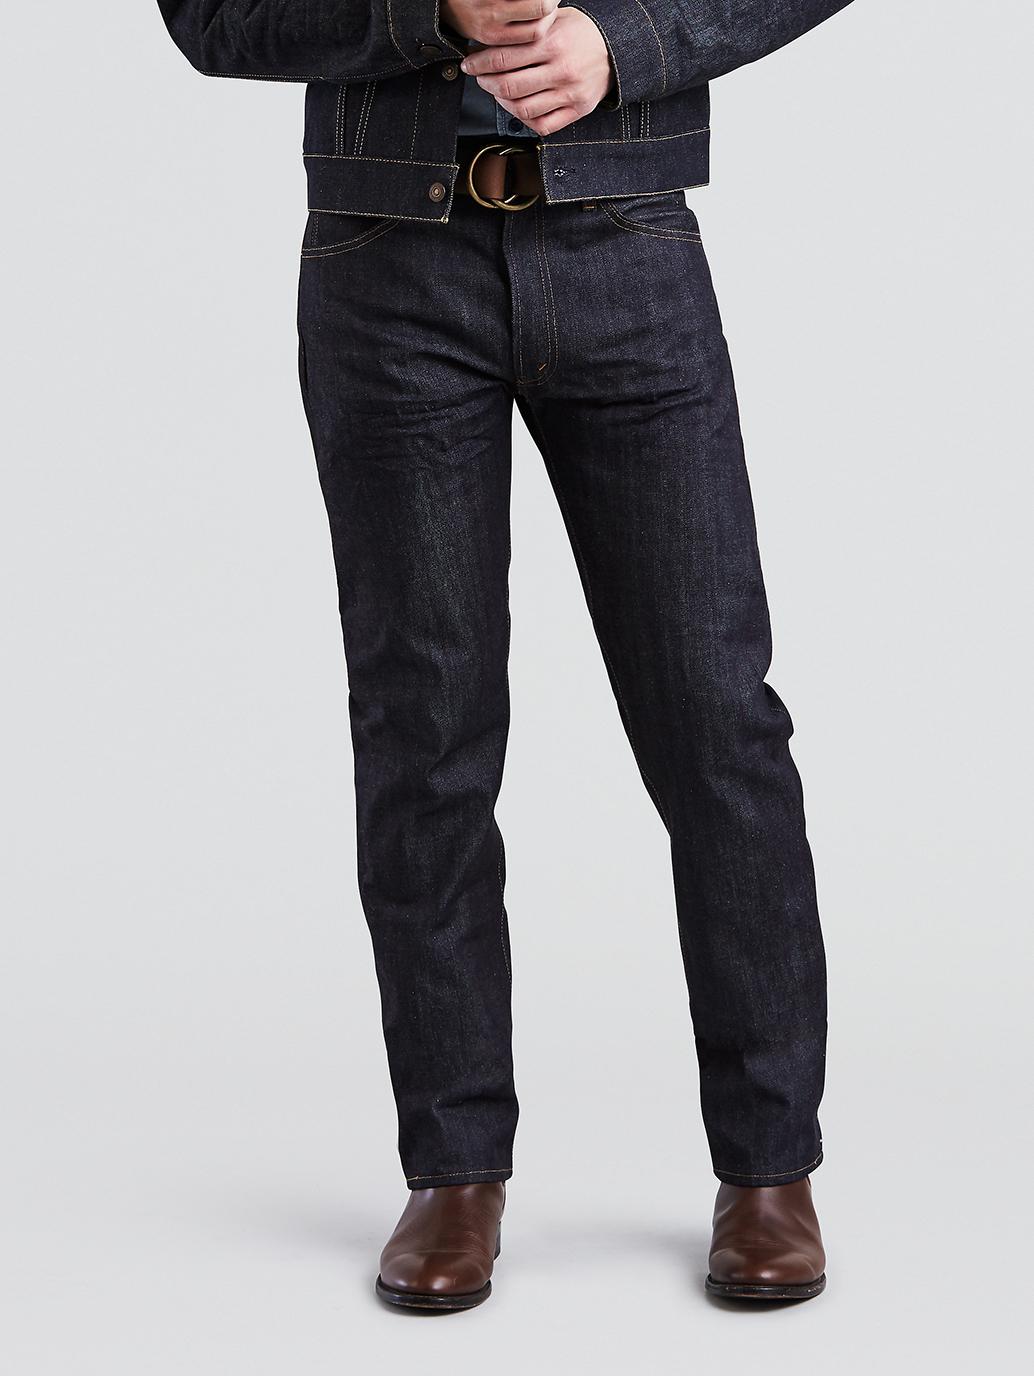 Buy Levi's® Vintage Clothing Men's 1967 505® Jeans | Levi's